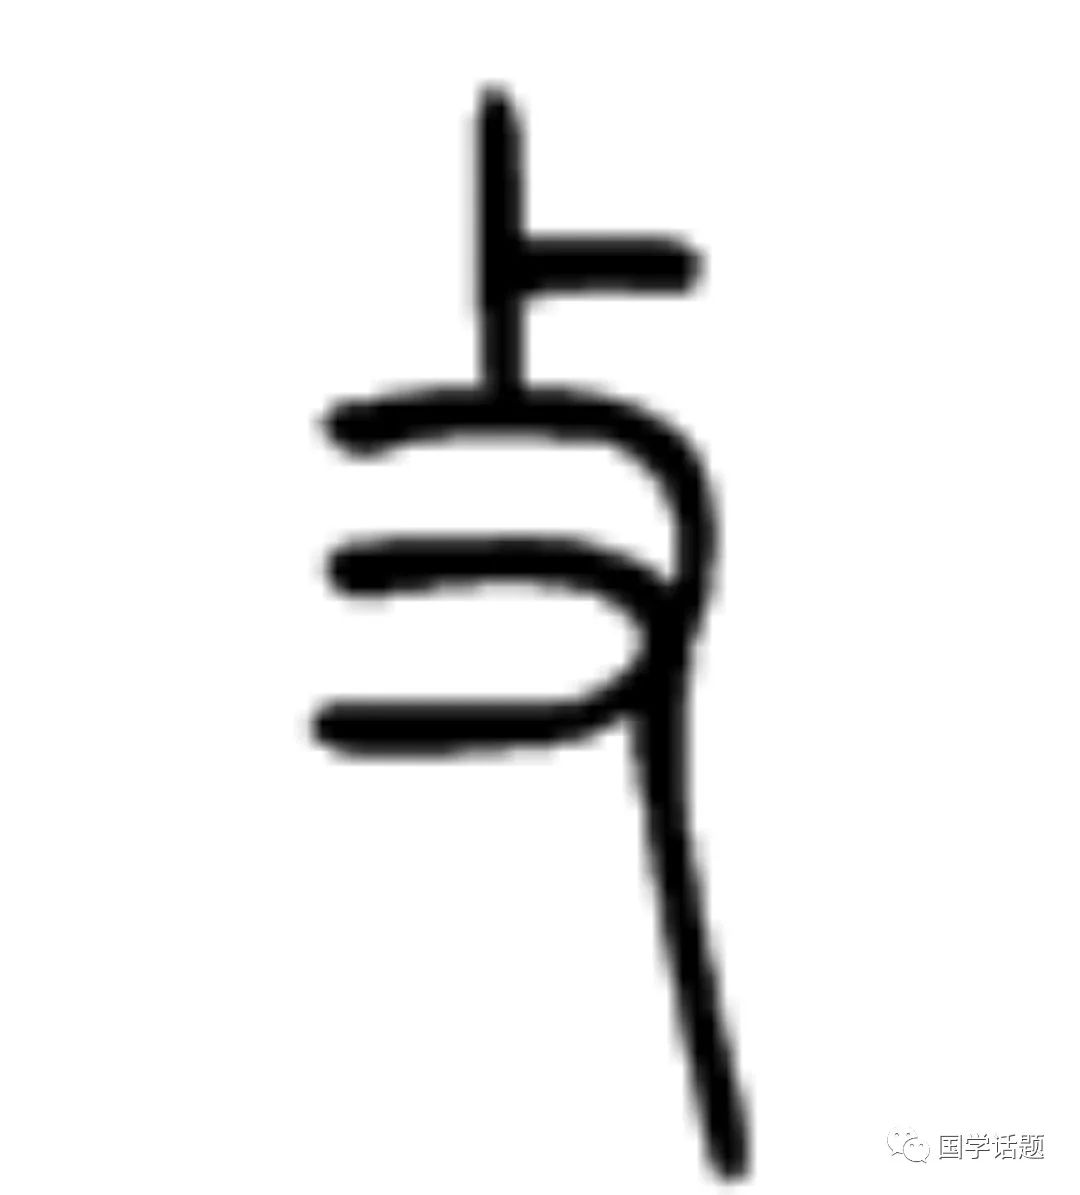 下面是"又"又"的小篆写法是这样的 小篆的"又"字象人的右手,左上